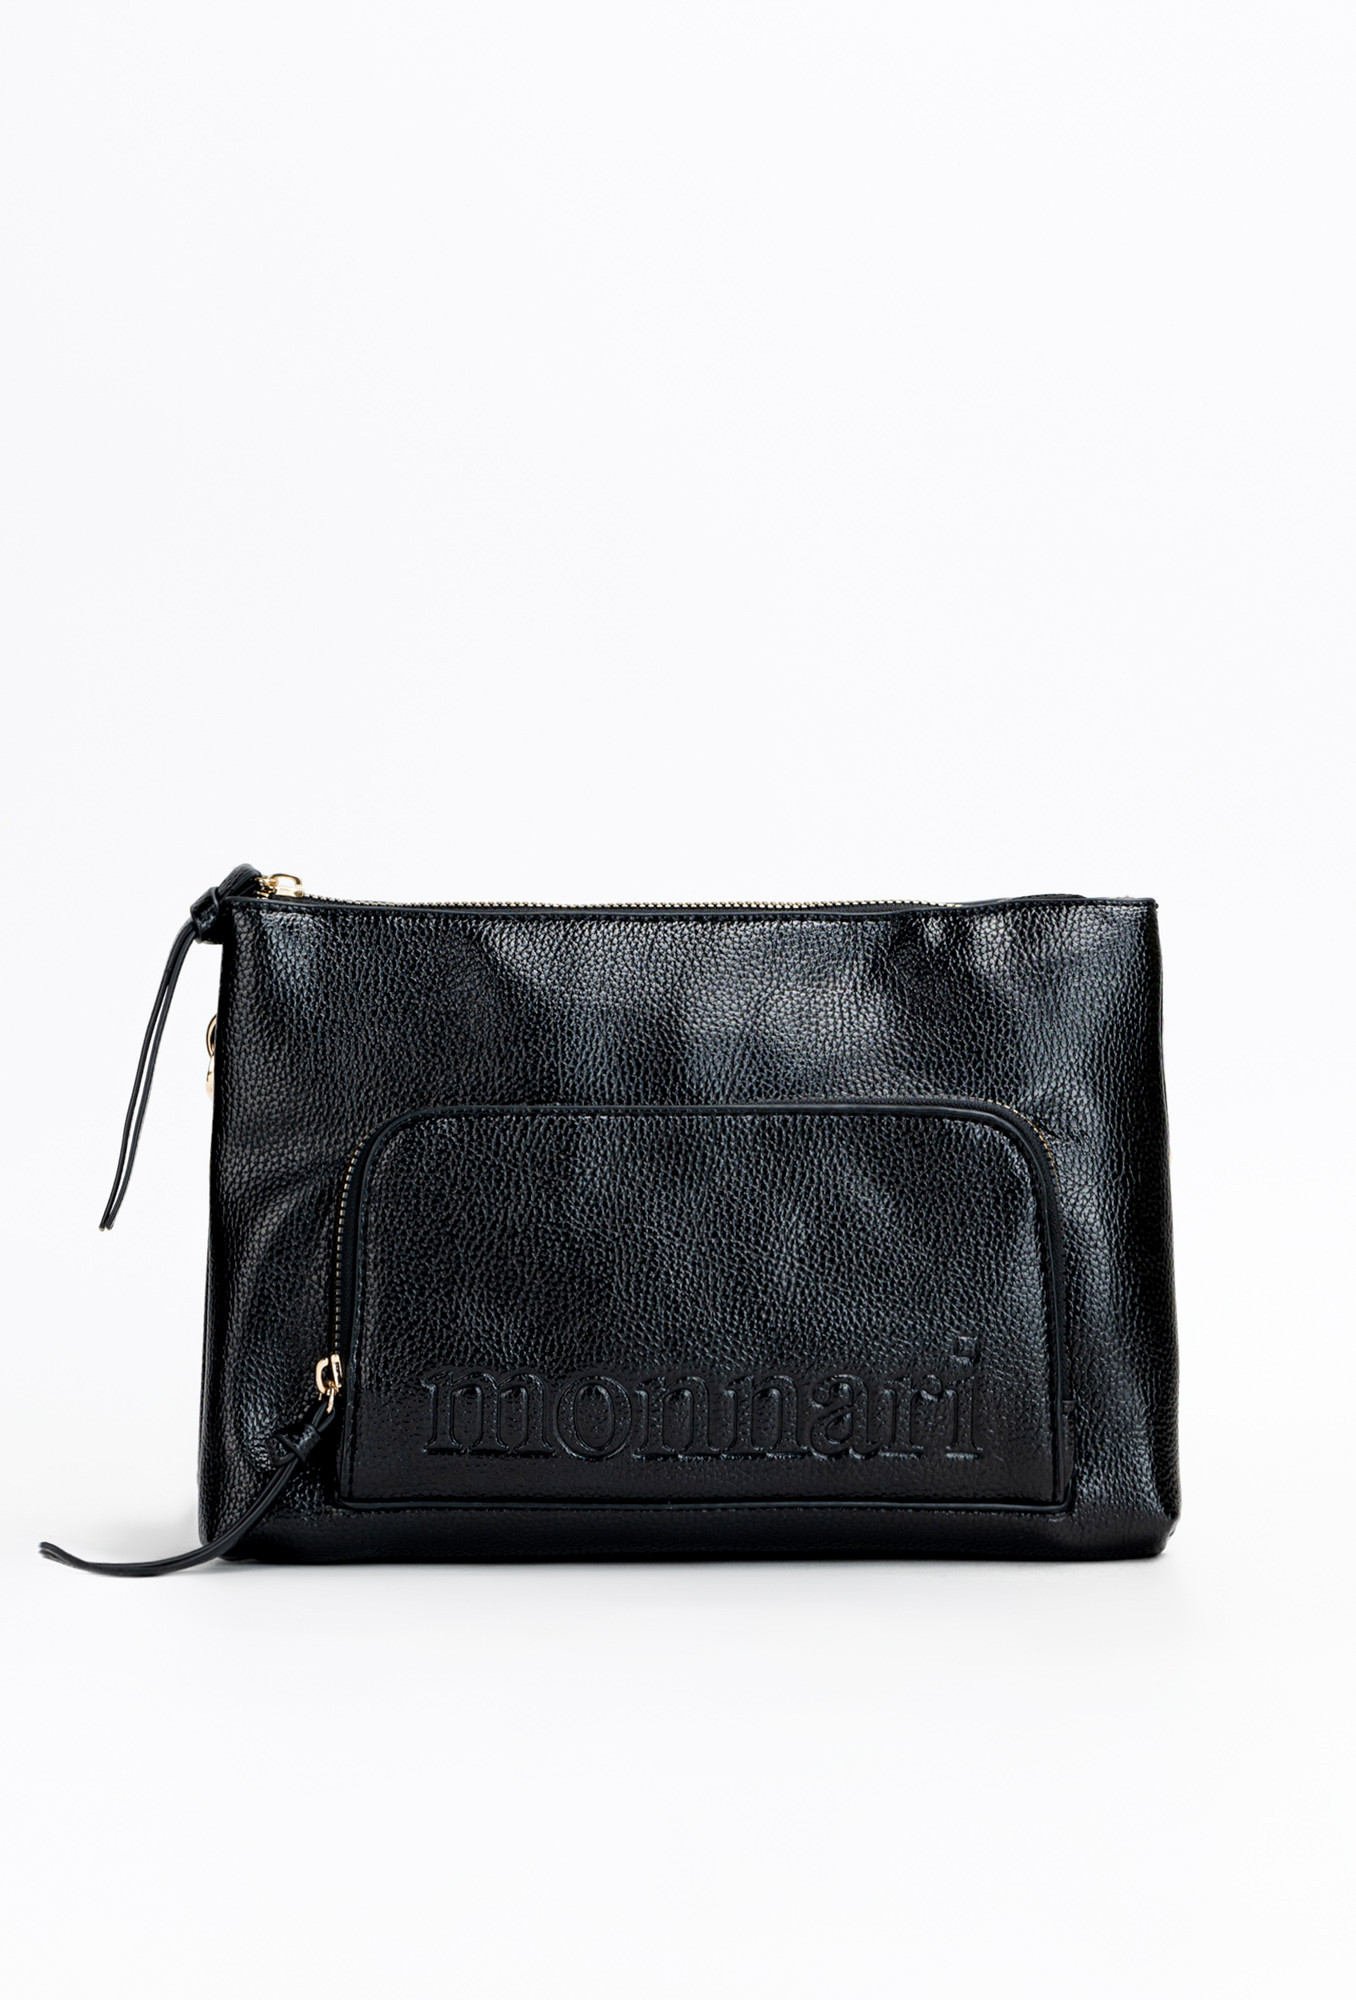 Monnari Bags Dámská kabelka s přední kapsou černá OS